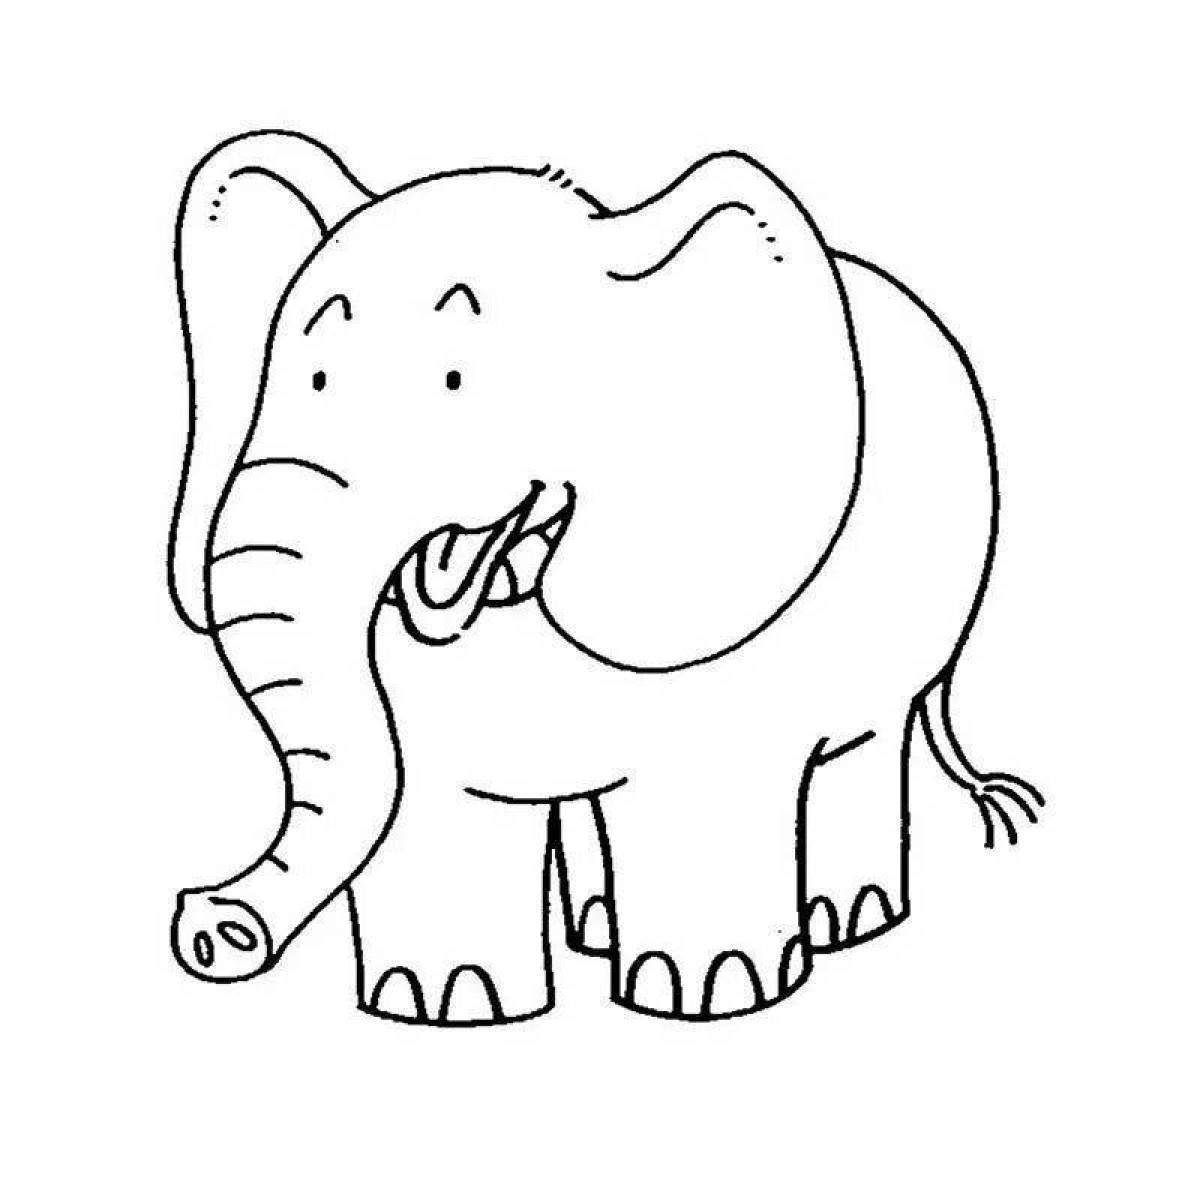 Слоник распечатать. Слон раскраска. Слоненок раскраска для детей. Слоник раскраска для детей. Слон раскраска для детей.